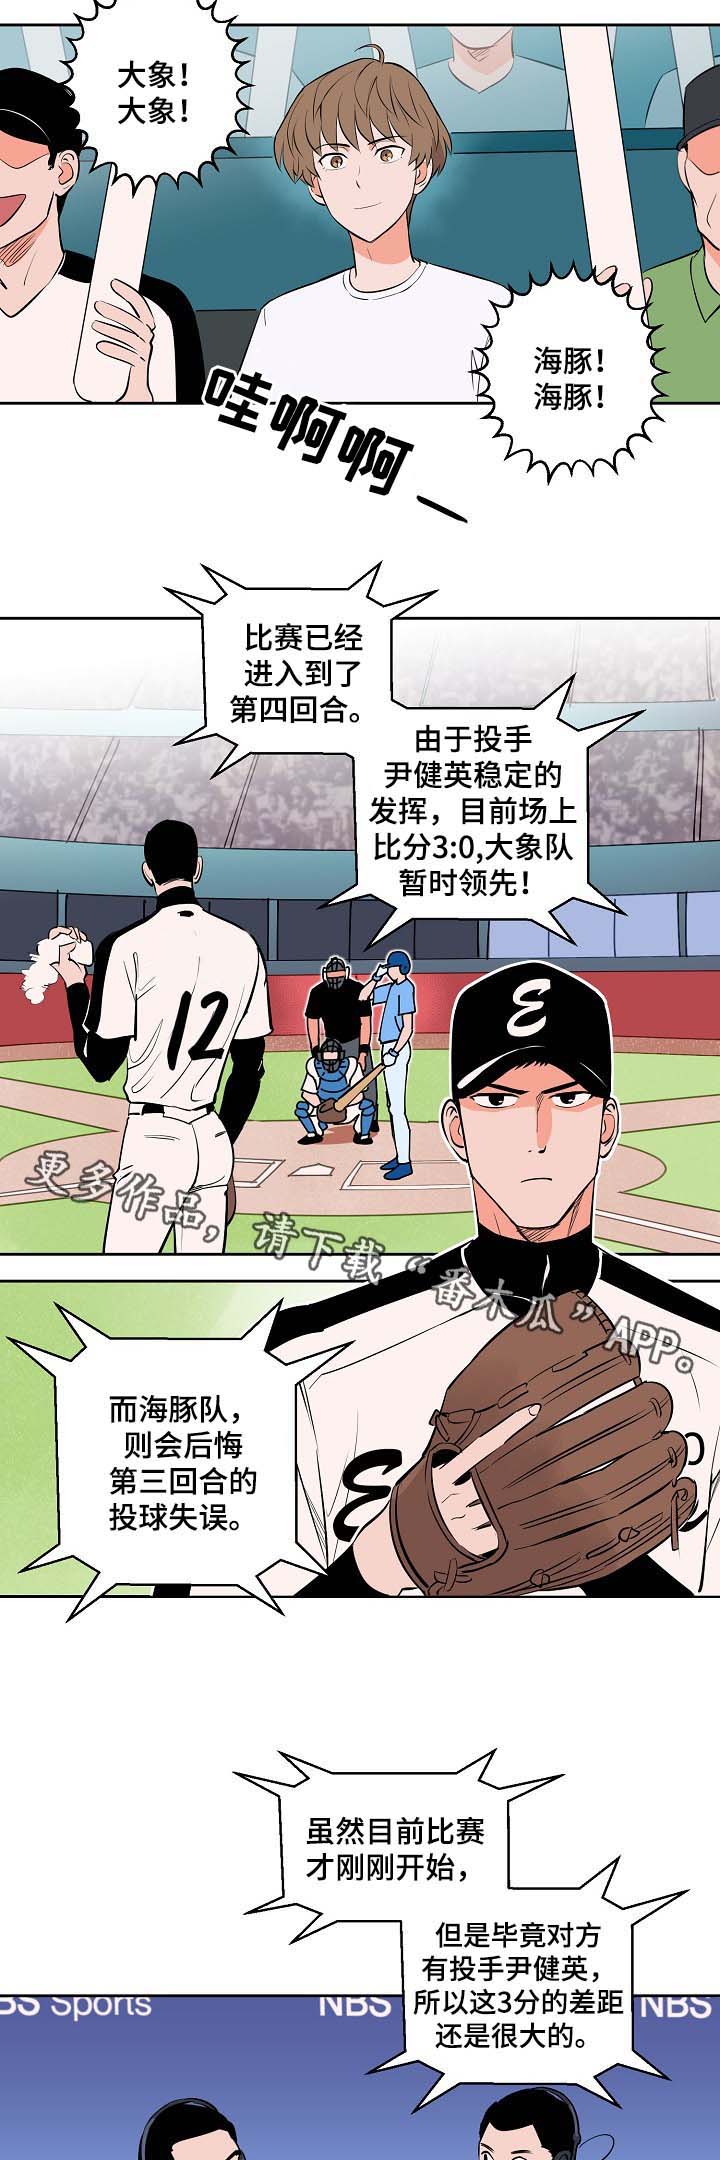 第87章釜山棒球赛12